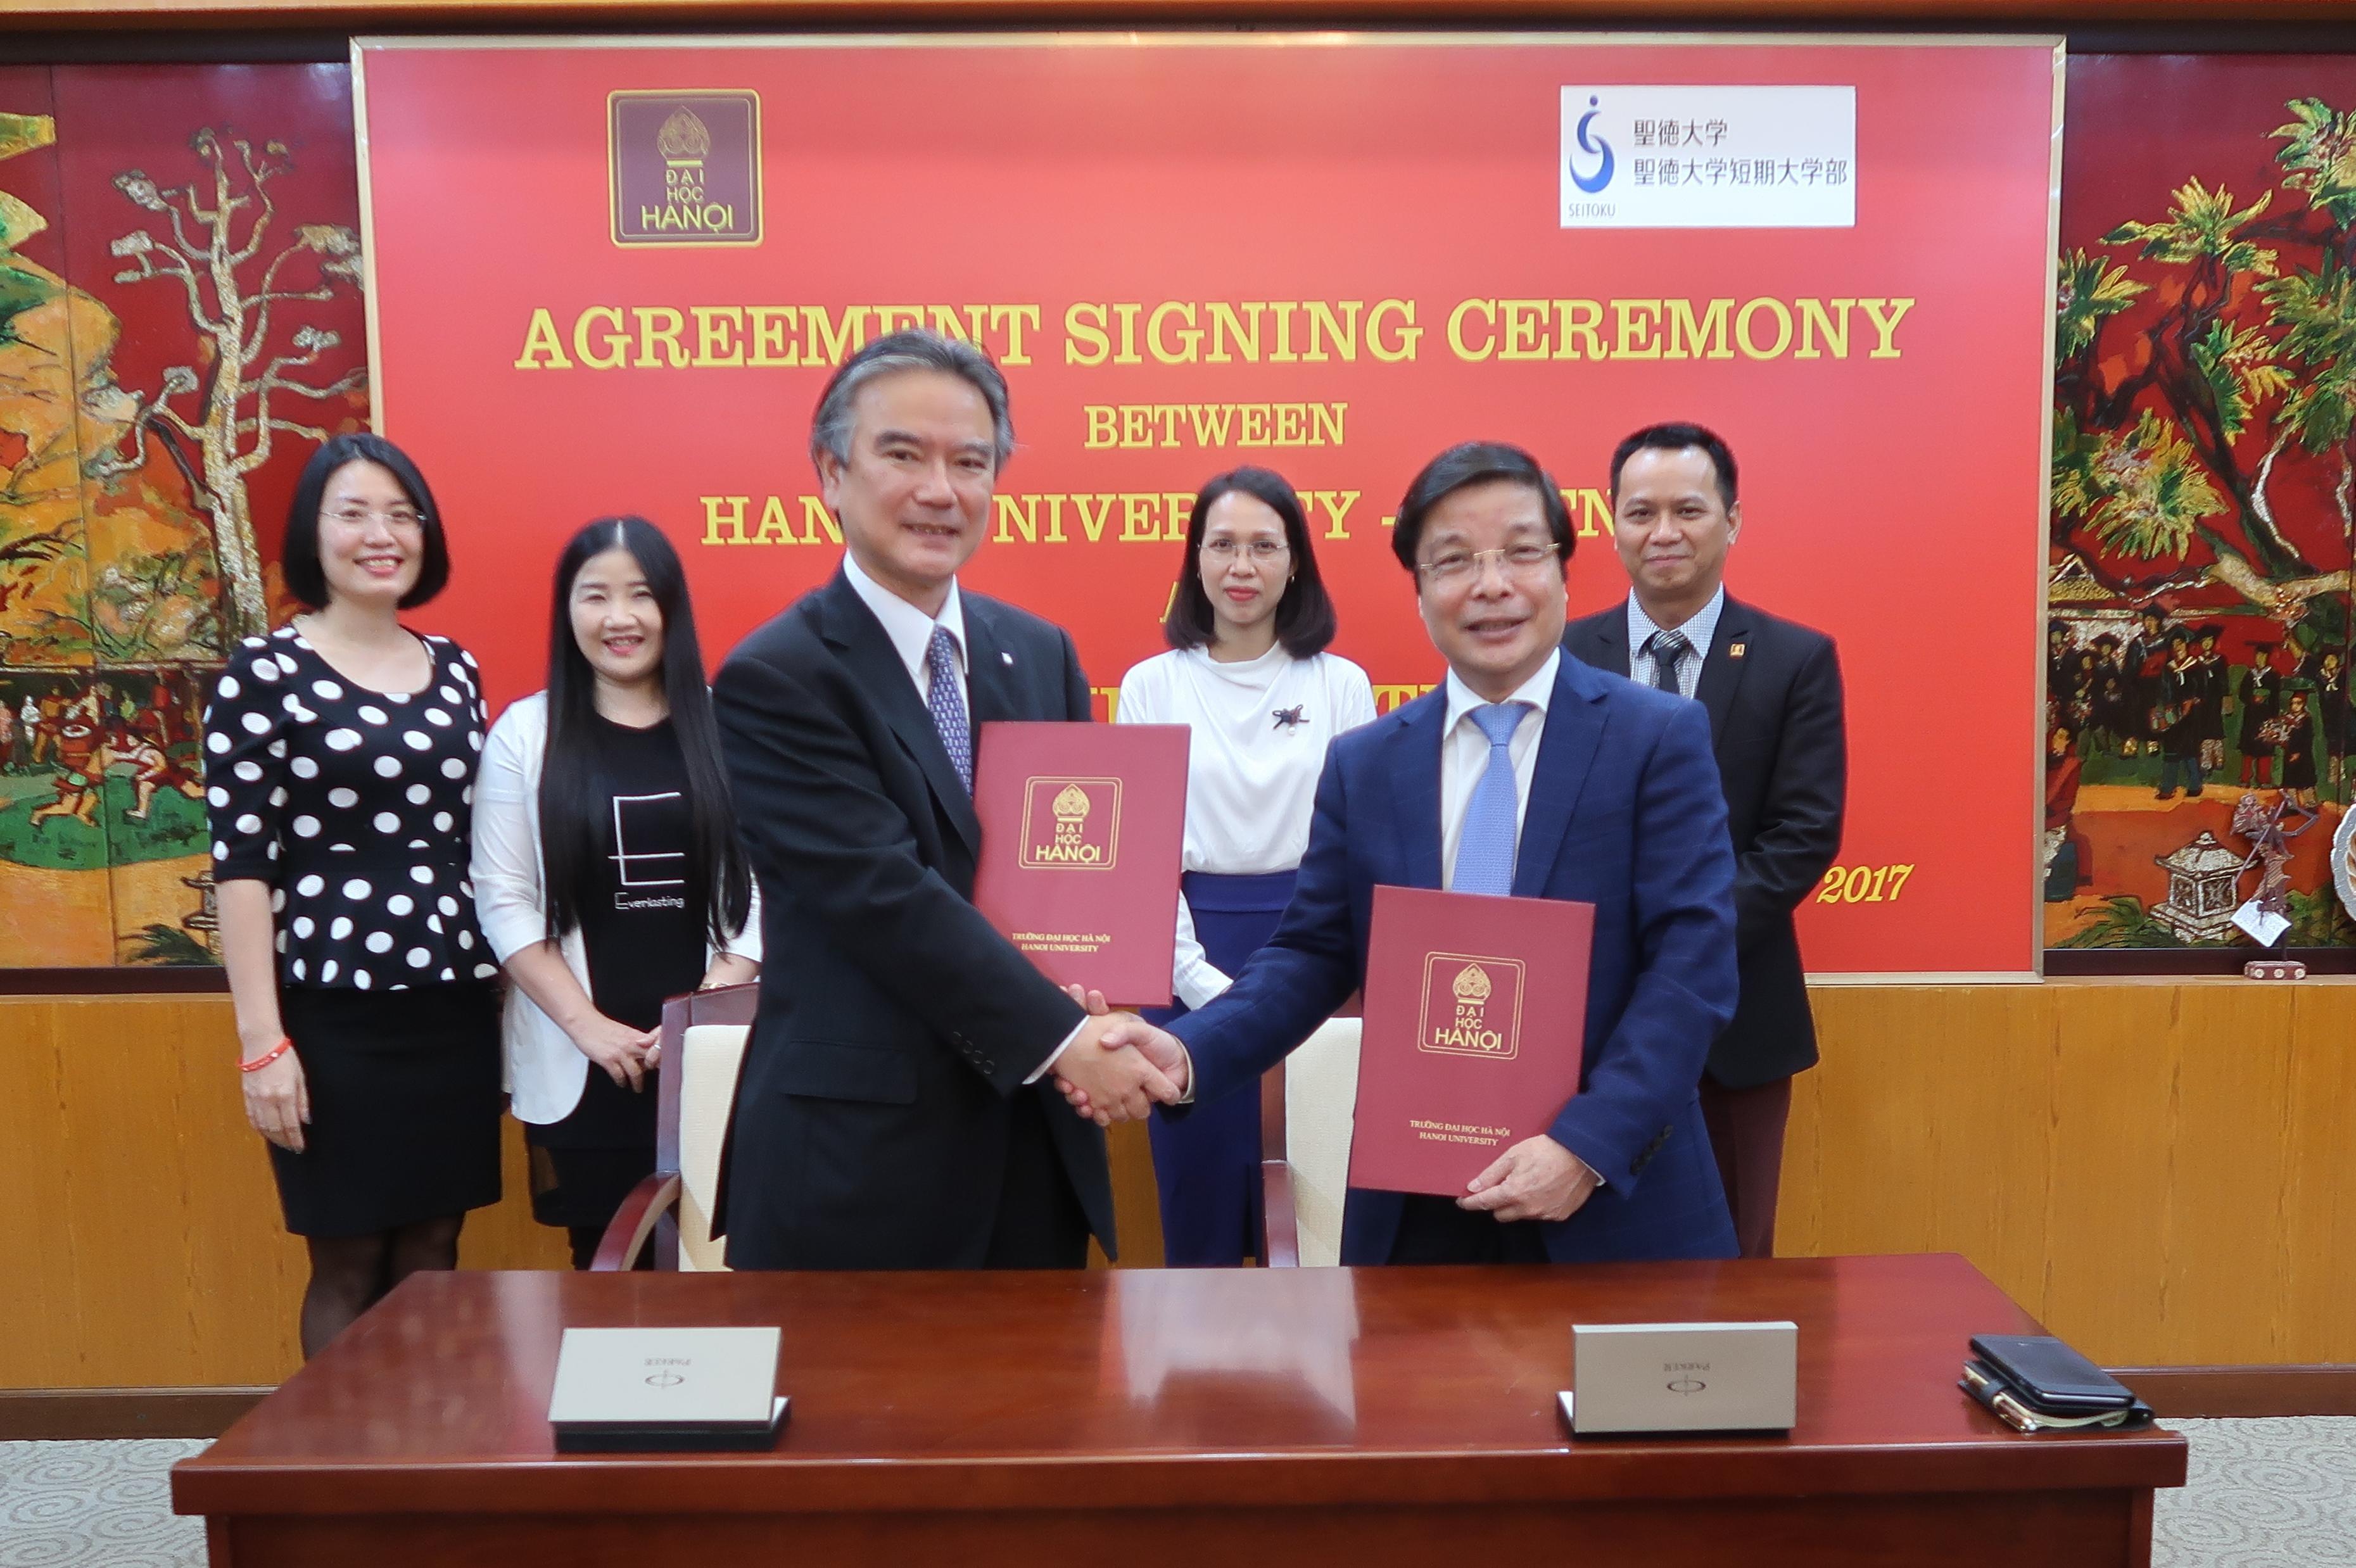 聖徳大学とベトナム・ハノイ大学が学術交流協定を締結 -- ベトナムにおける幼児教育の振興促進を目指す